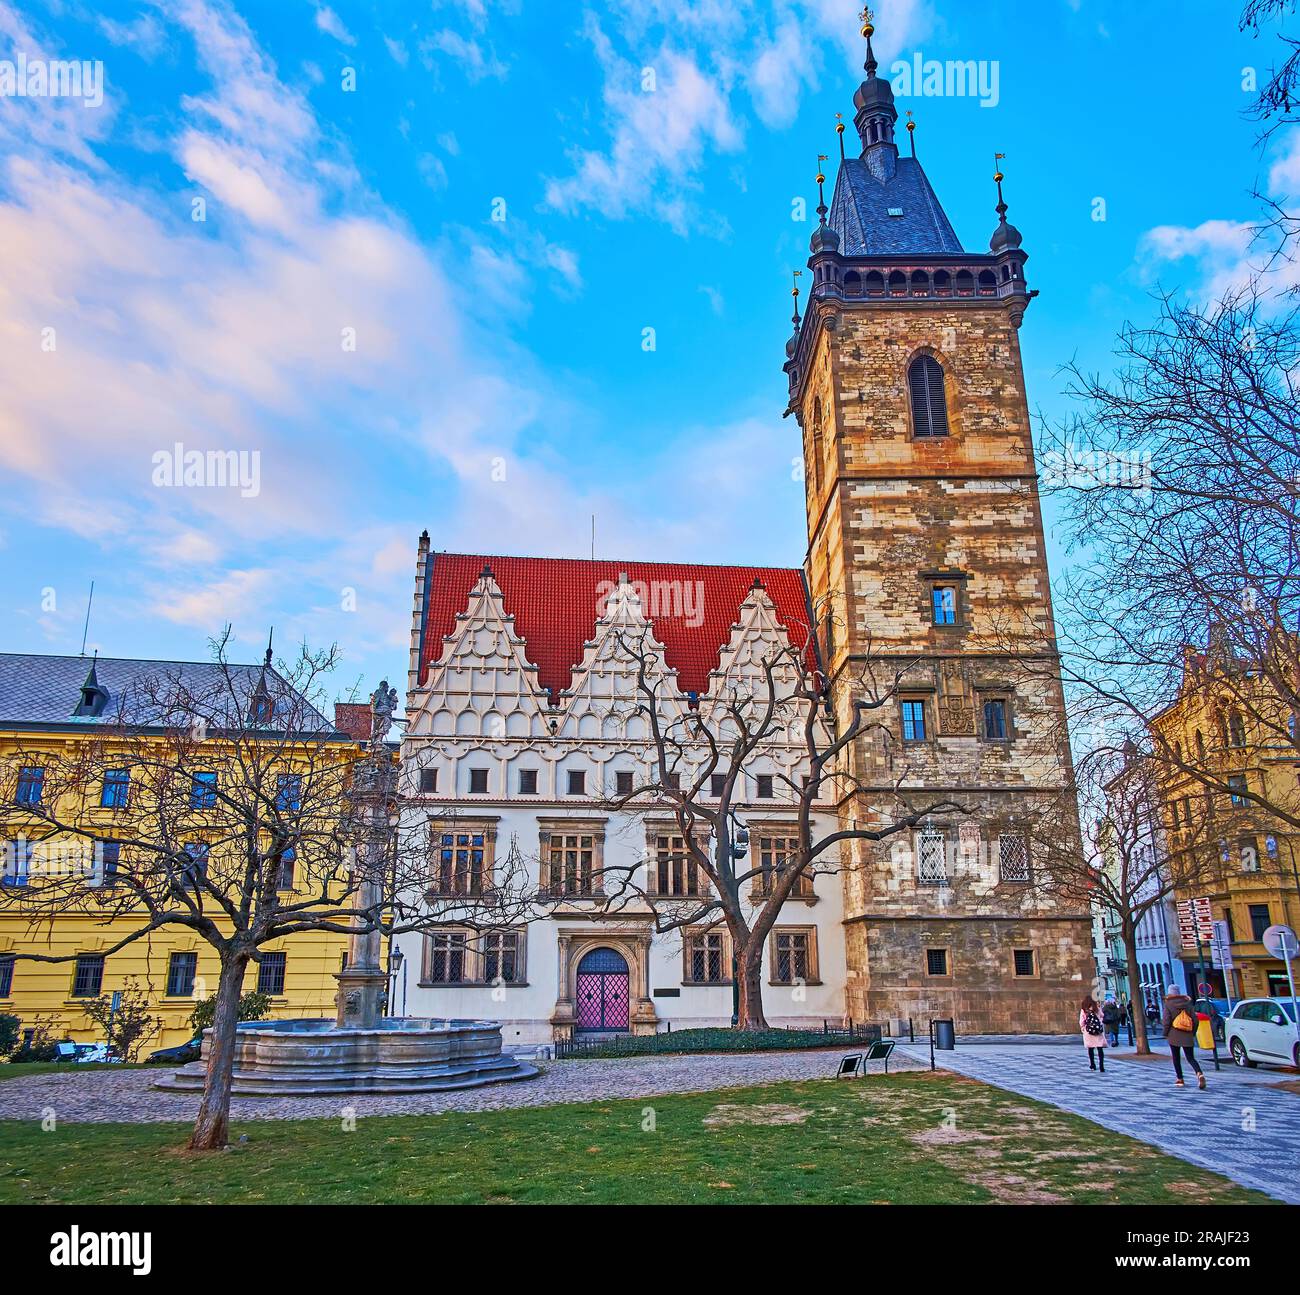 Fontaine avec colonne de peste sur la place Charles et le bâtiment médiéval de l'Hôtel de ville Nove Mesto contre le ciel bleu du soir, Prague, Tchéquie Banque D'Images